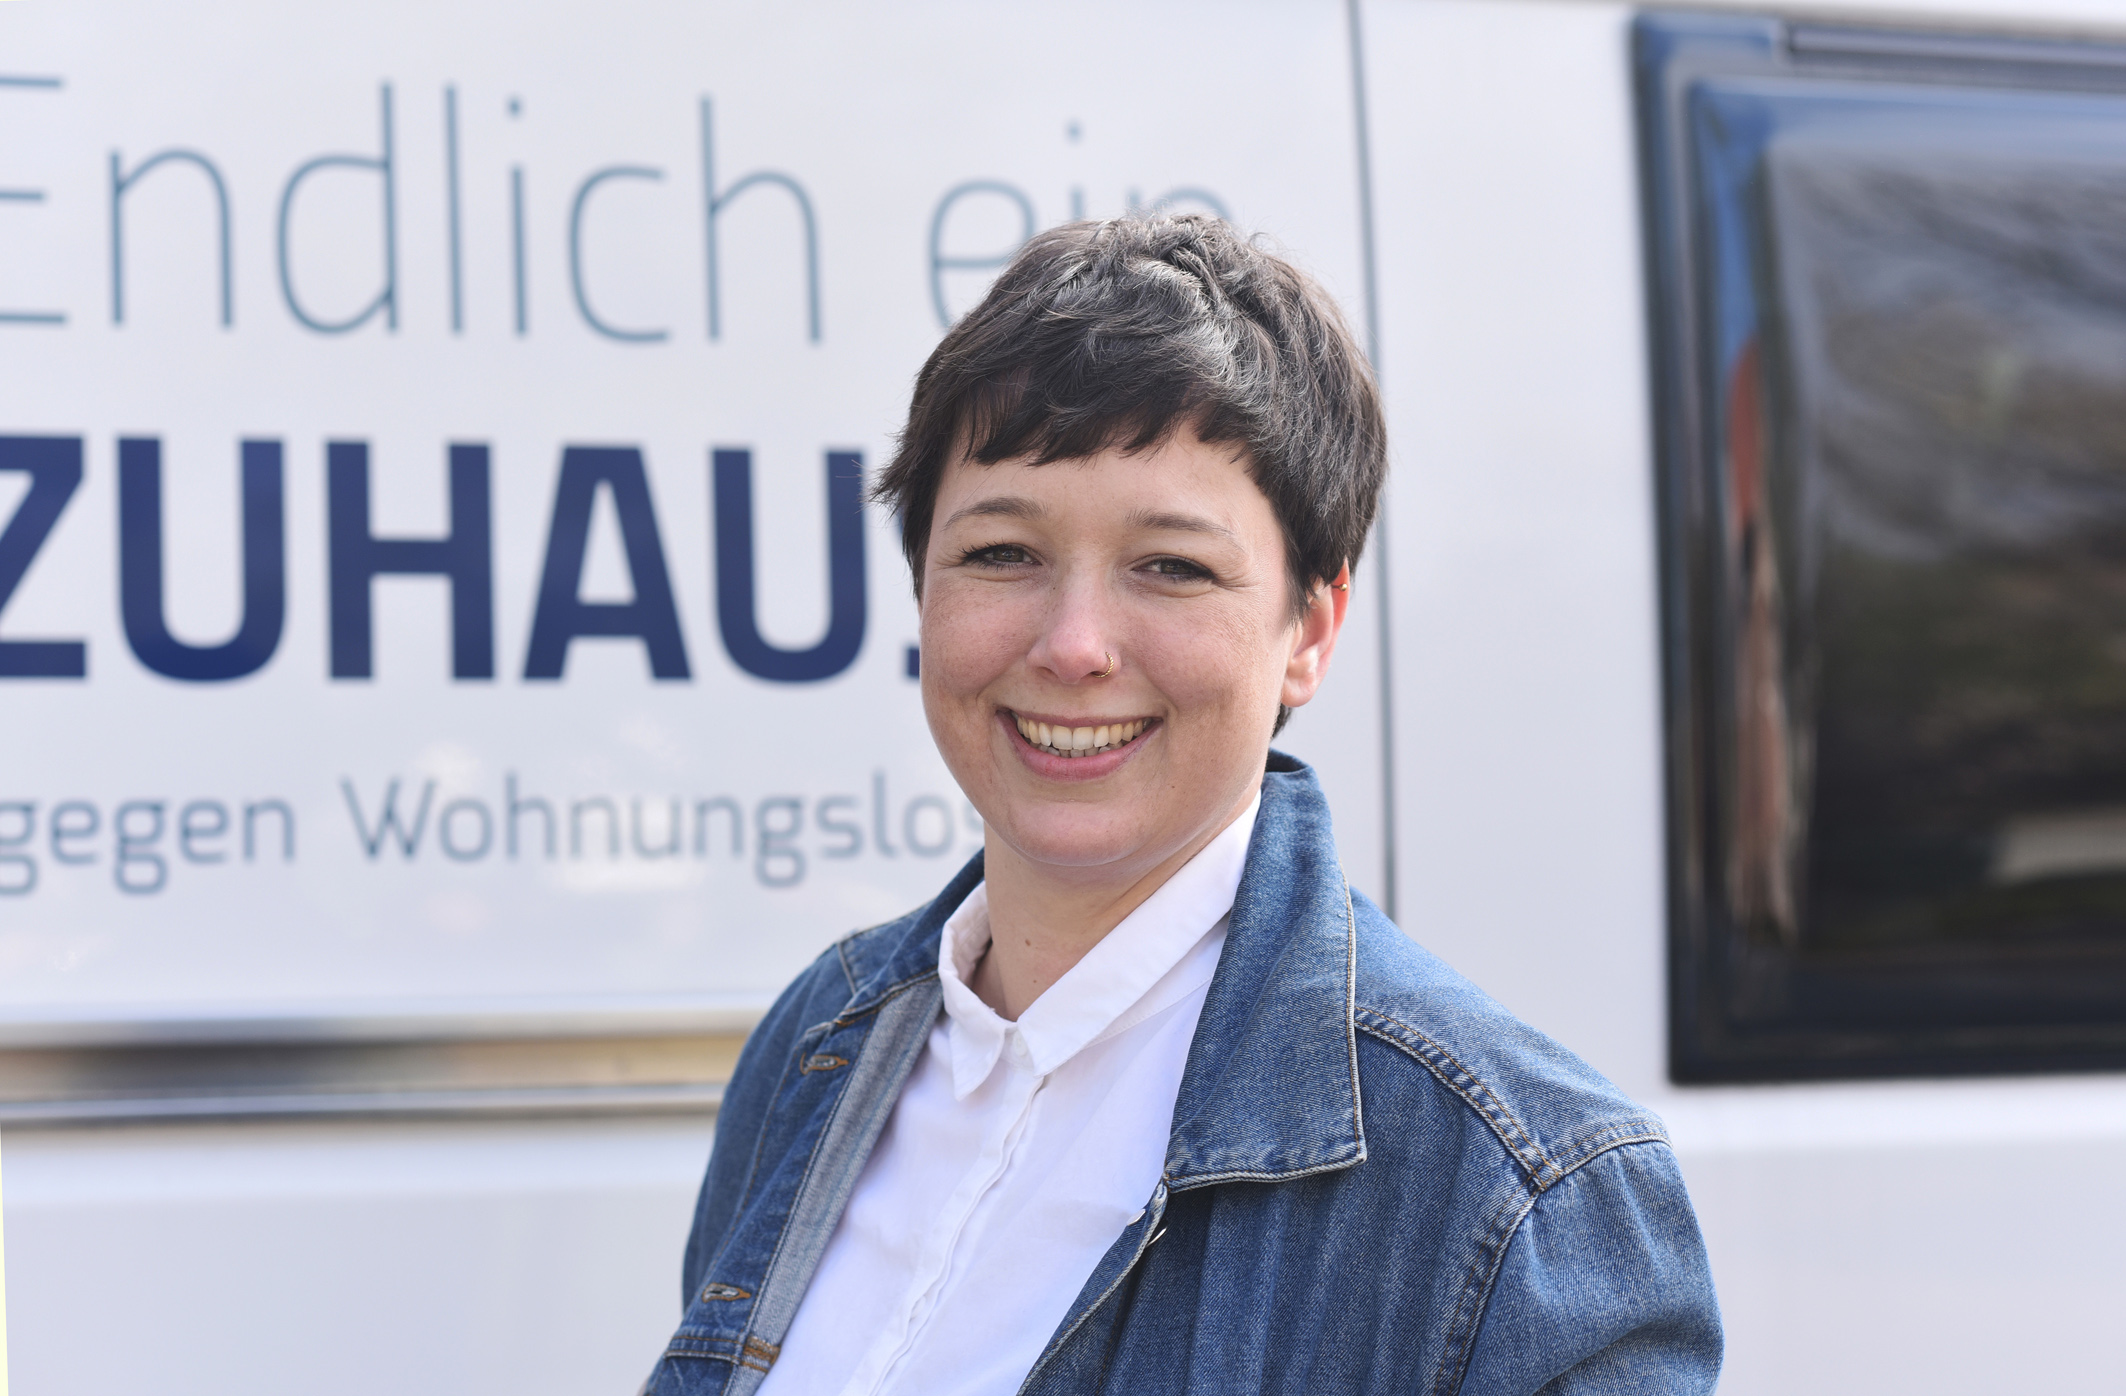 Kristina Teubler, kommissarische Fachbereichsleitung der Wohnungslosenhilfe der Caritas im Rhein-Kreis Neuss